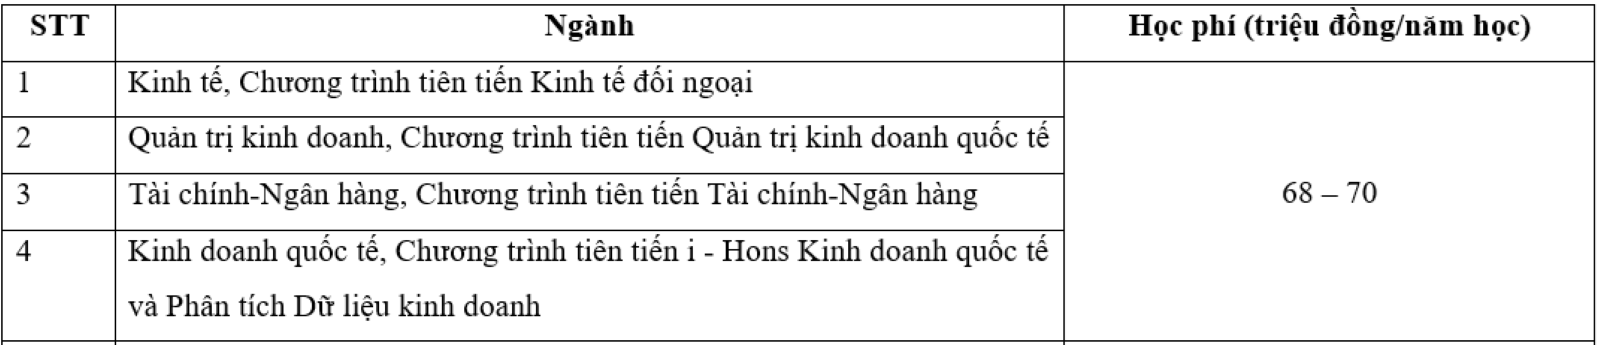 hoc-phi-chuong-trinh-dao-tao-tien-tien-15320027-1722488291144-1722488291372154556308.png